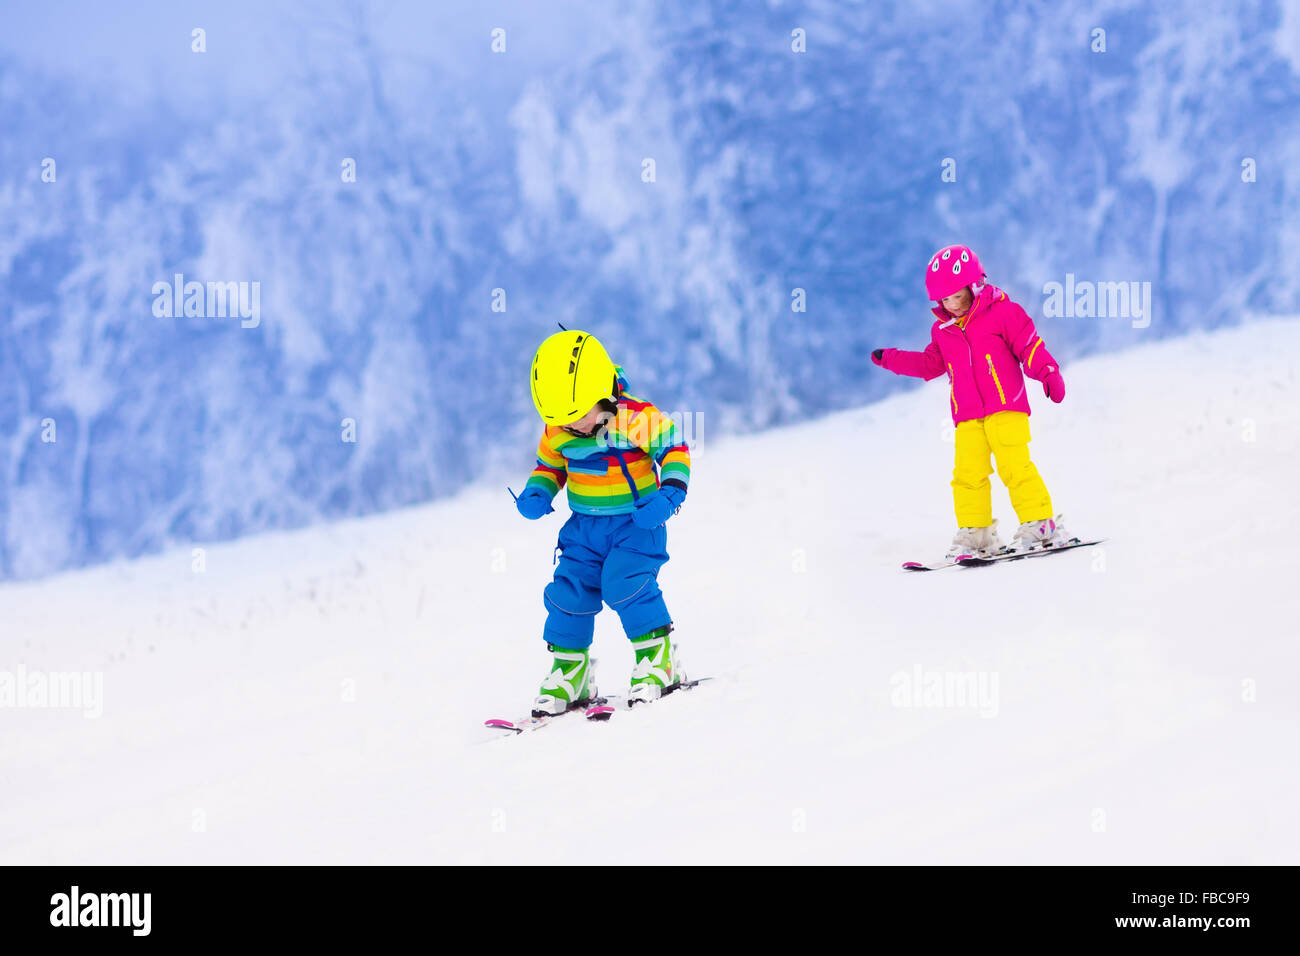 Les enfants de ski dans les montagnes. Tout-petits enfants en costume coloré et casque de sécurité l'apprentissage du ski. Sport d'hiver pour la famille Banque D'Images